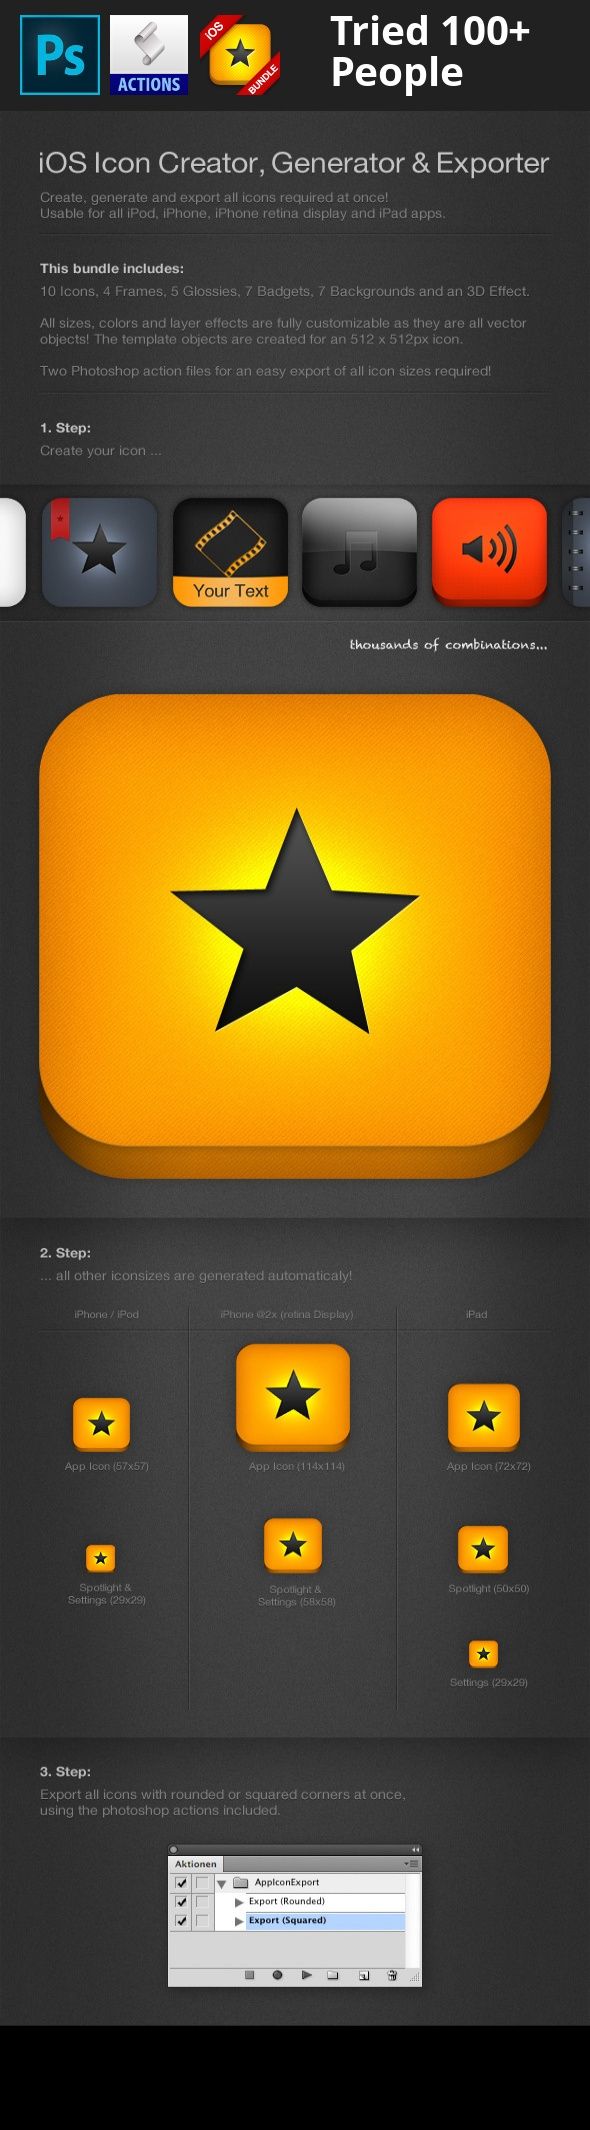 rounded corner app icon generator